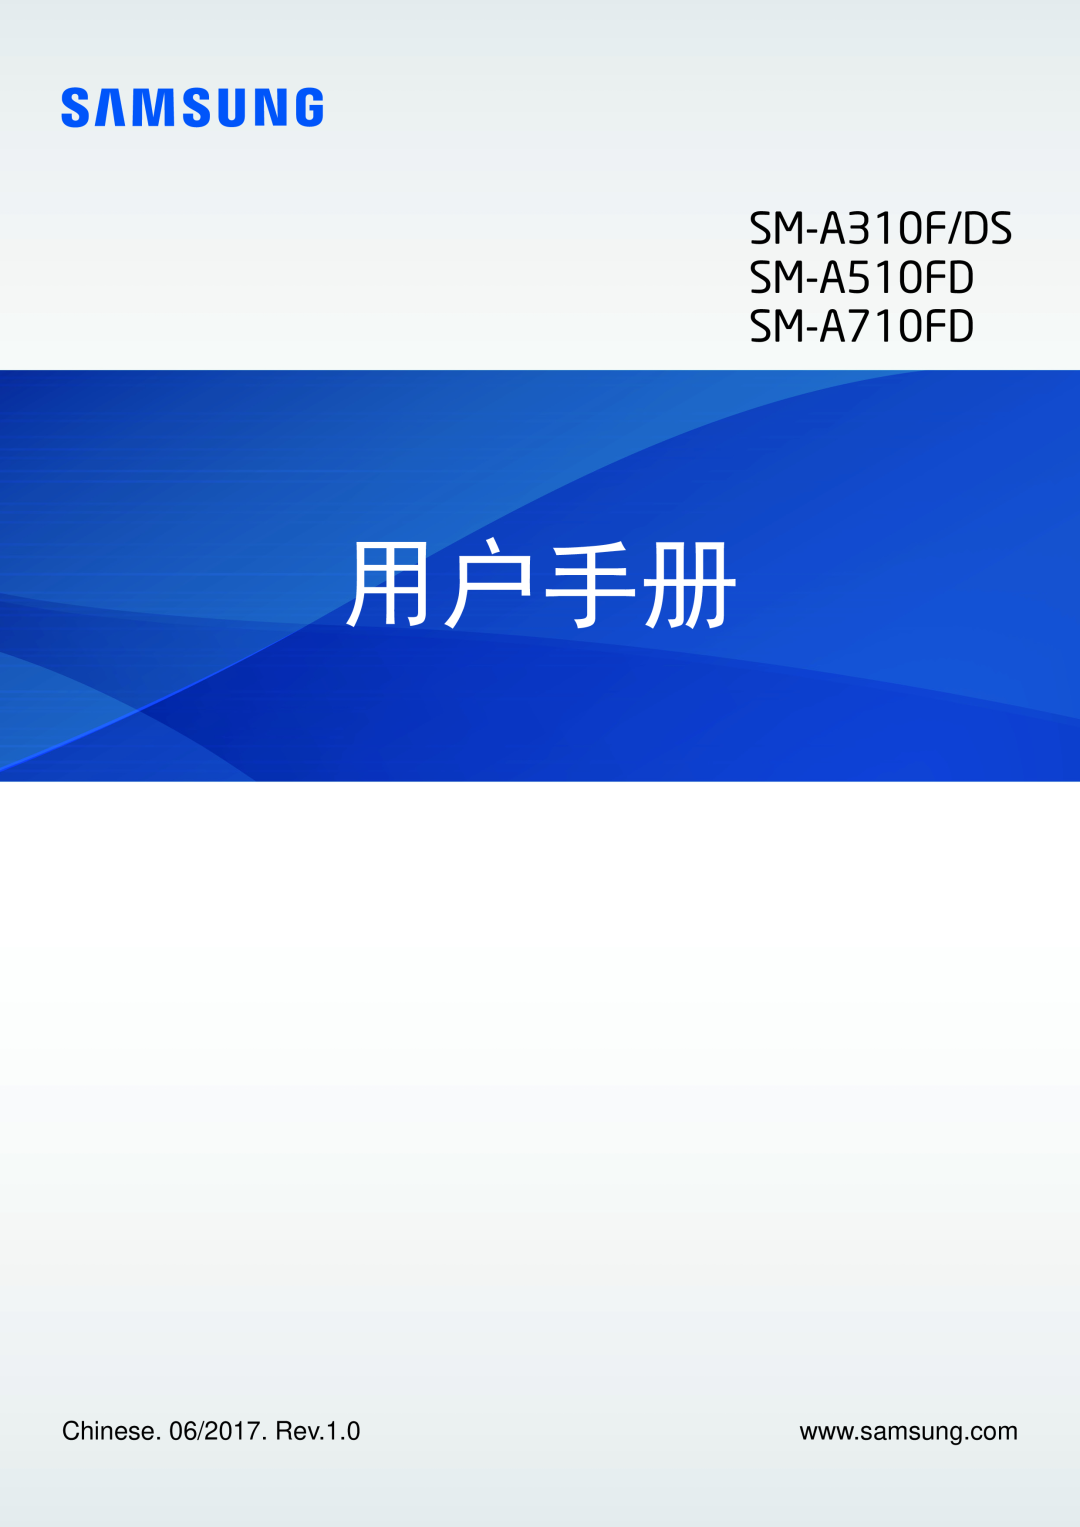 Samsung SM-A710FZKFXXV, SM-A710FZDFXXV manual Chinese. 06/2017. Rev.1.0, 用户手册, SM-A310F/DS SM-A510FD SM-A710FD 